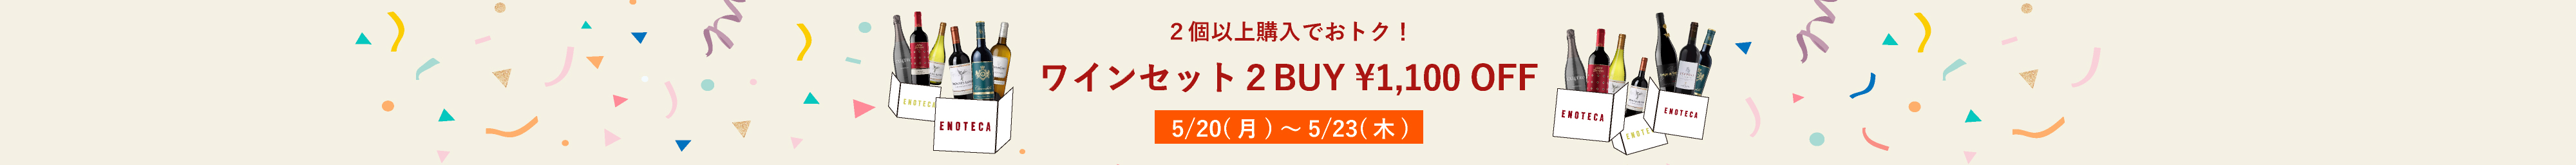 ワインセット2BUY1,100円OFFキャンペーン